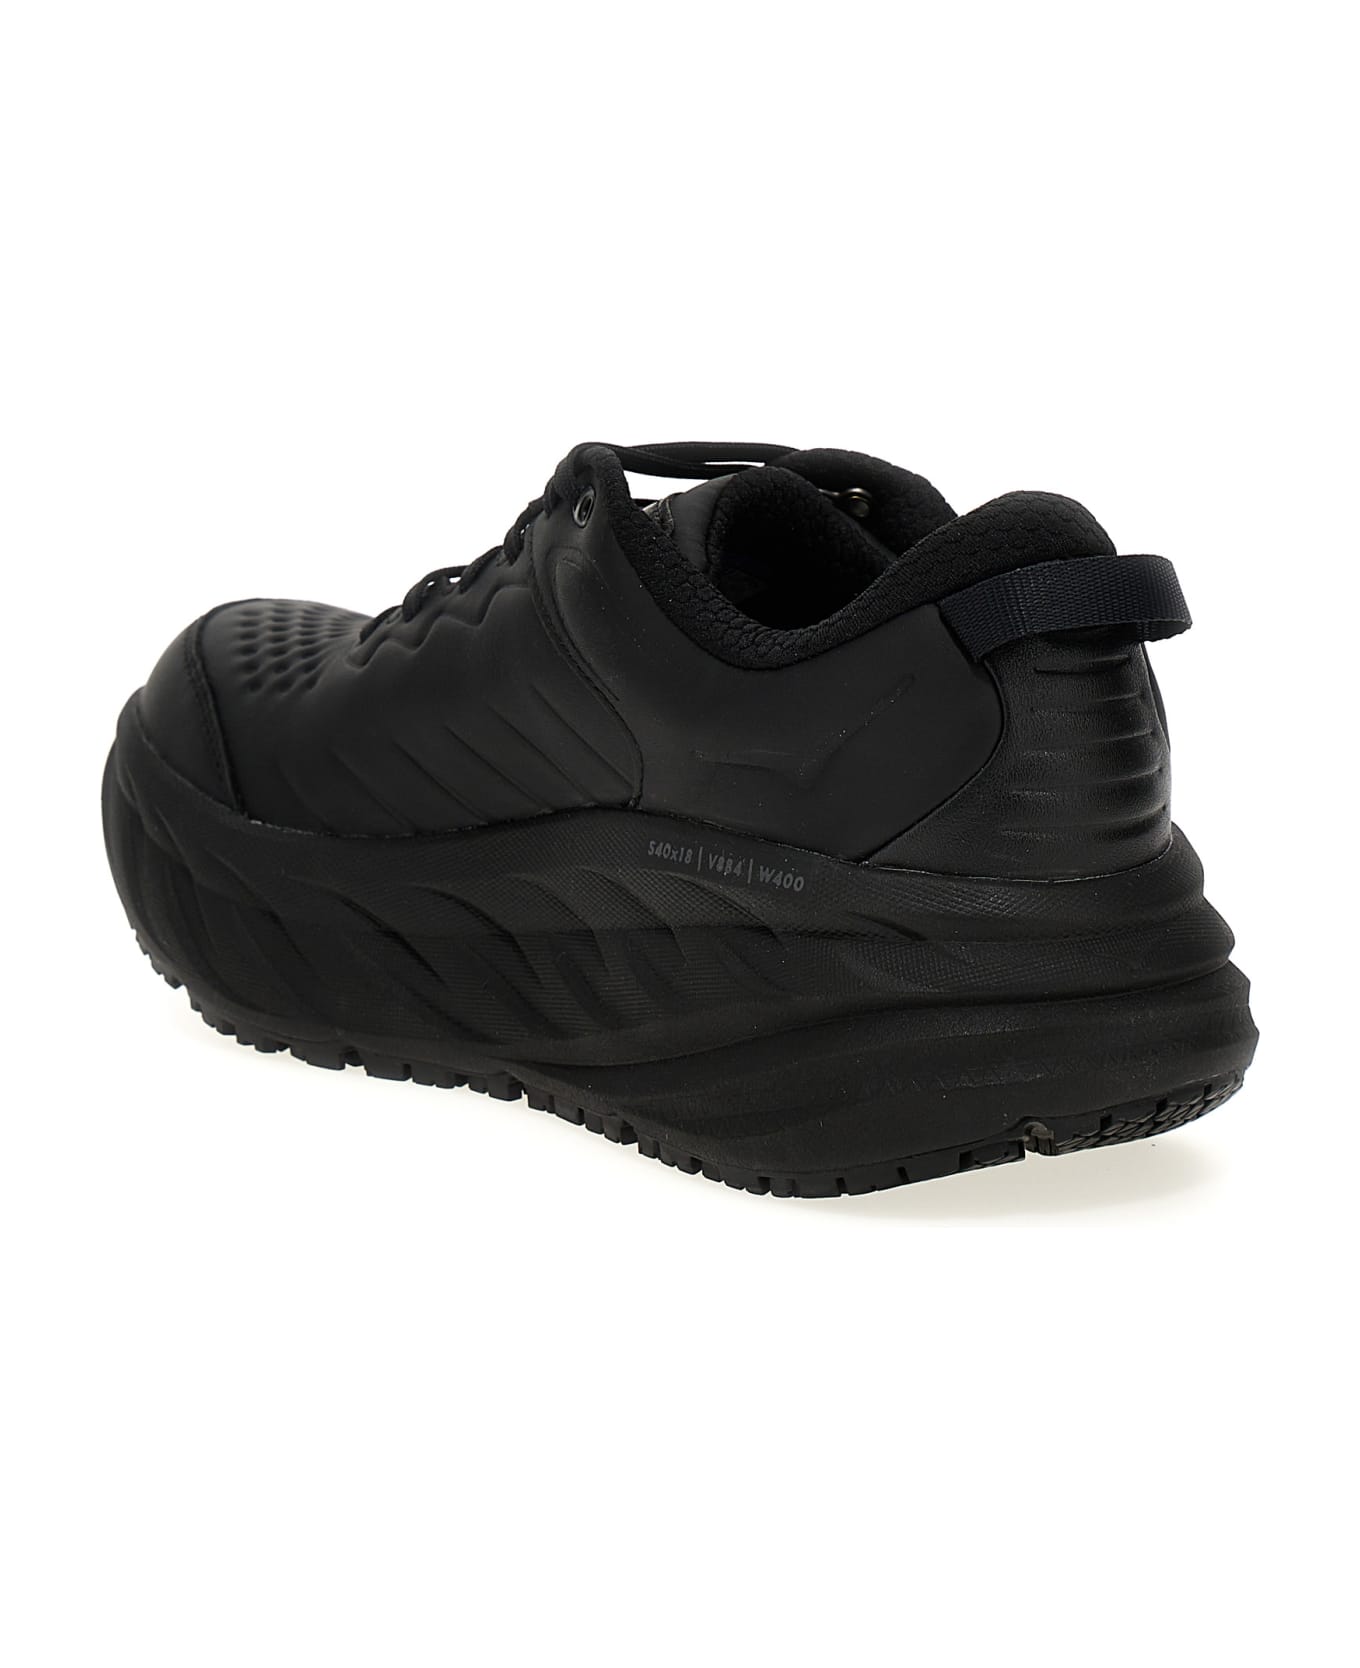 Hoka One One 'bondi Sr' Sneakers - Black  